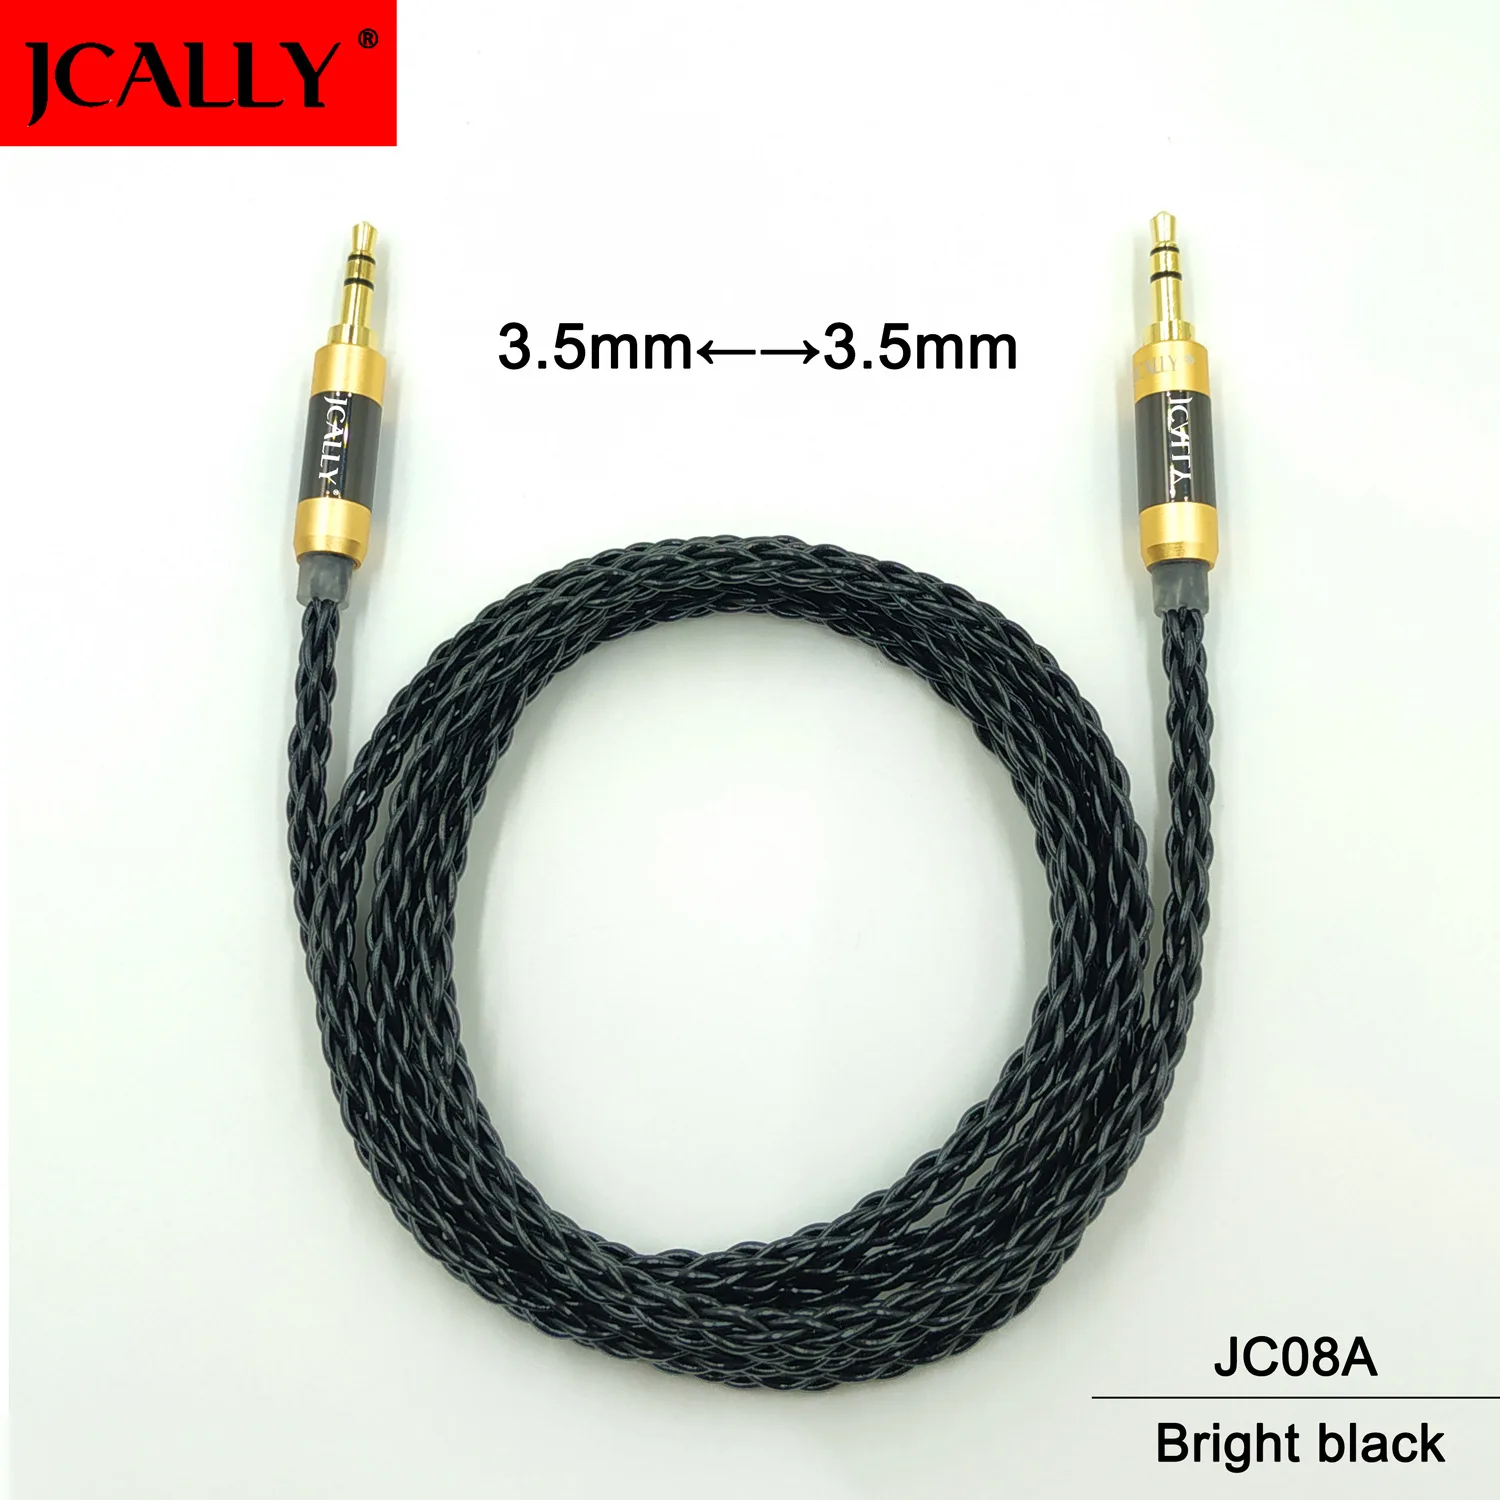 JCALLY JC08A бескислородное медное покрытие 3,5 пар 3,5 пара линия записи обновление линии AUX аудио кабель - Цвет: Bright black